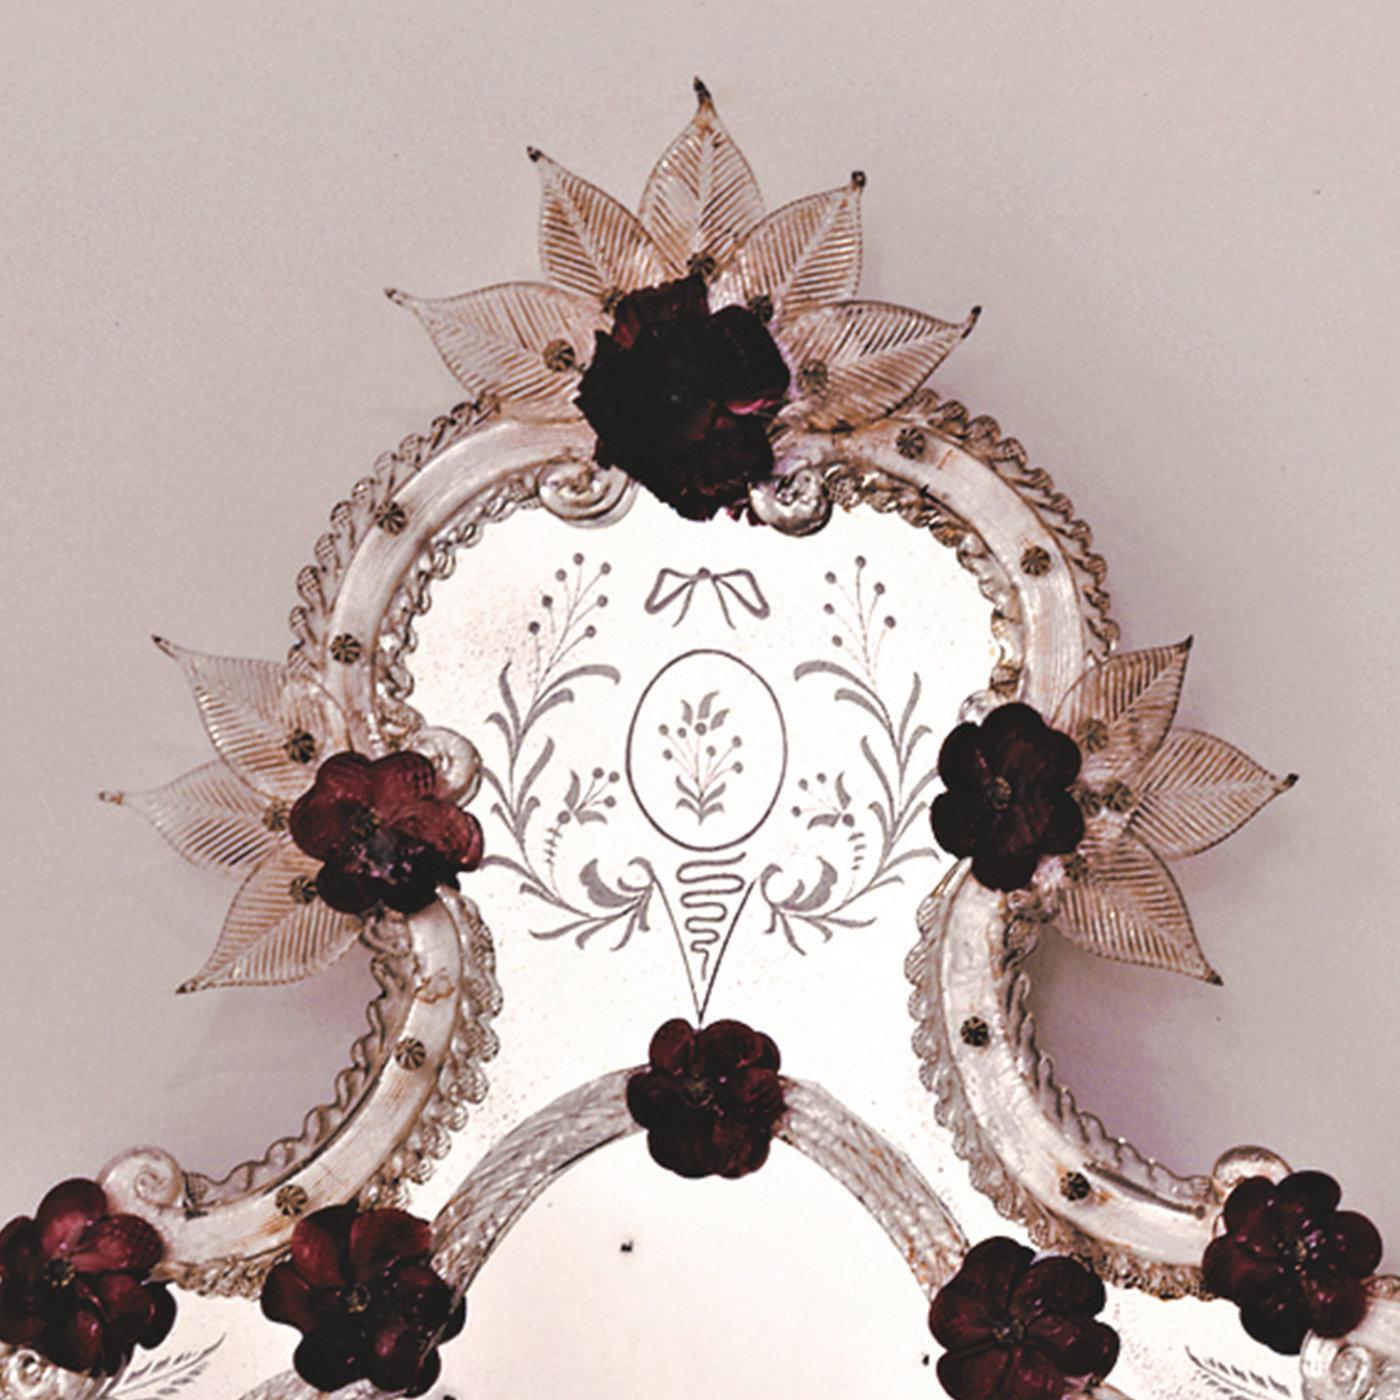 Cette charmante reproduction d'un miroir ancien présente un profil sinueux avec des insertions tridimensionnelles de roses et de fleurs en pâte de verre précieuse, de couleur corail, qui lui confèrent un charme délicat et féminin. Les détails